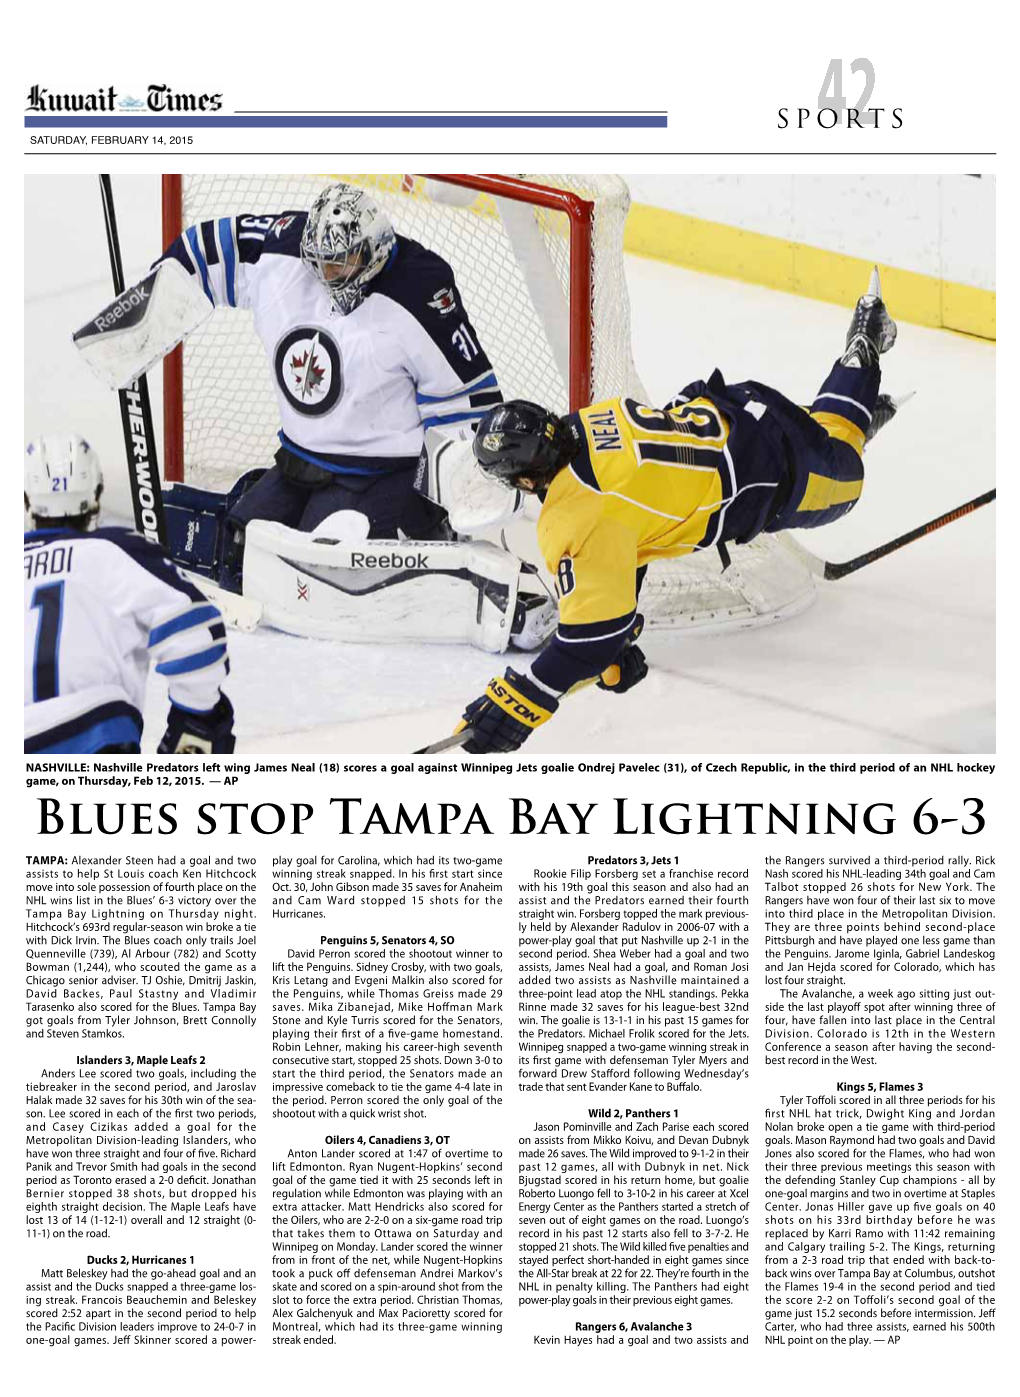 Blues Stop Tampa Bay Lightning 6-3